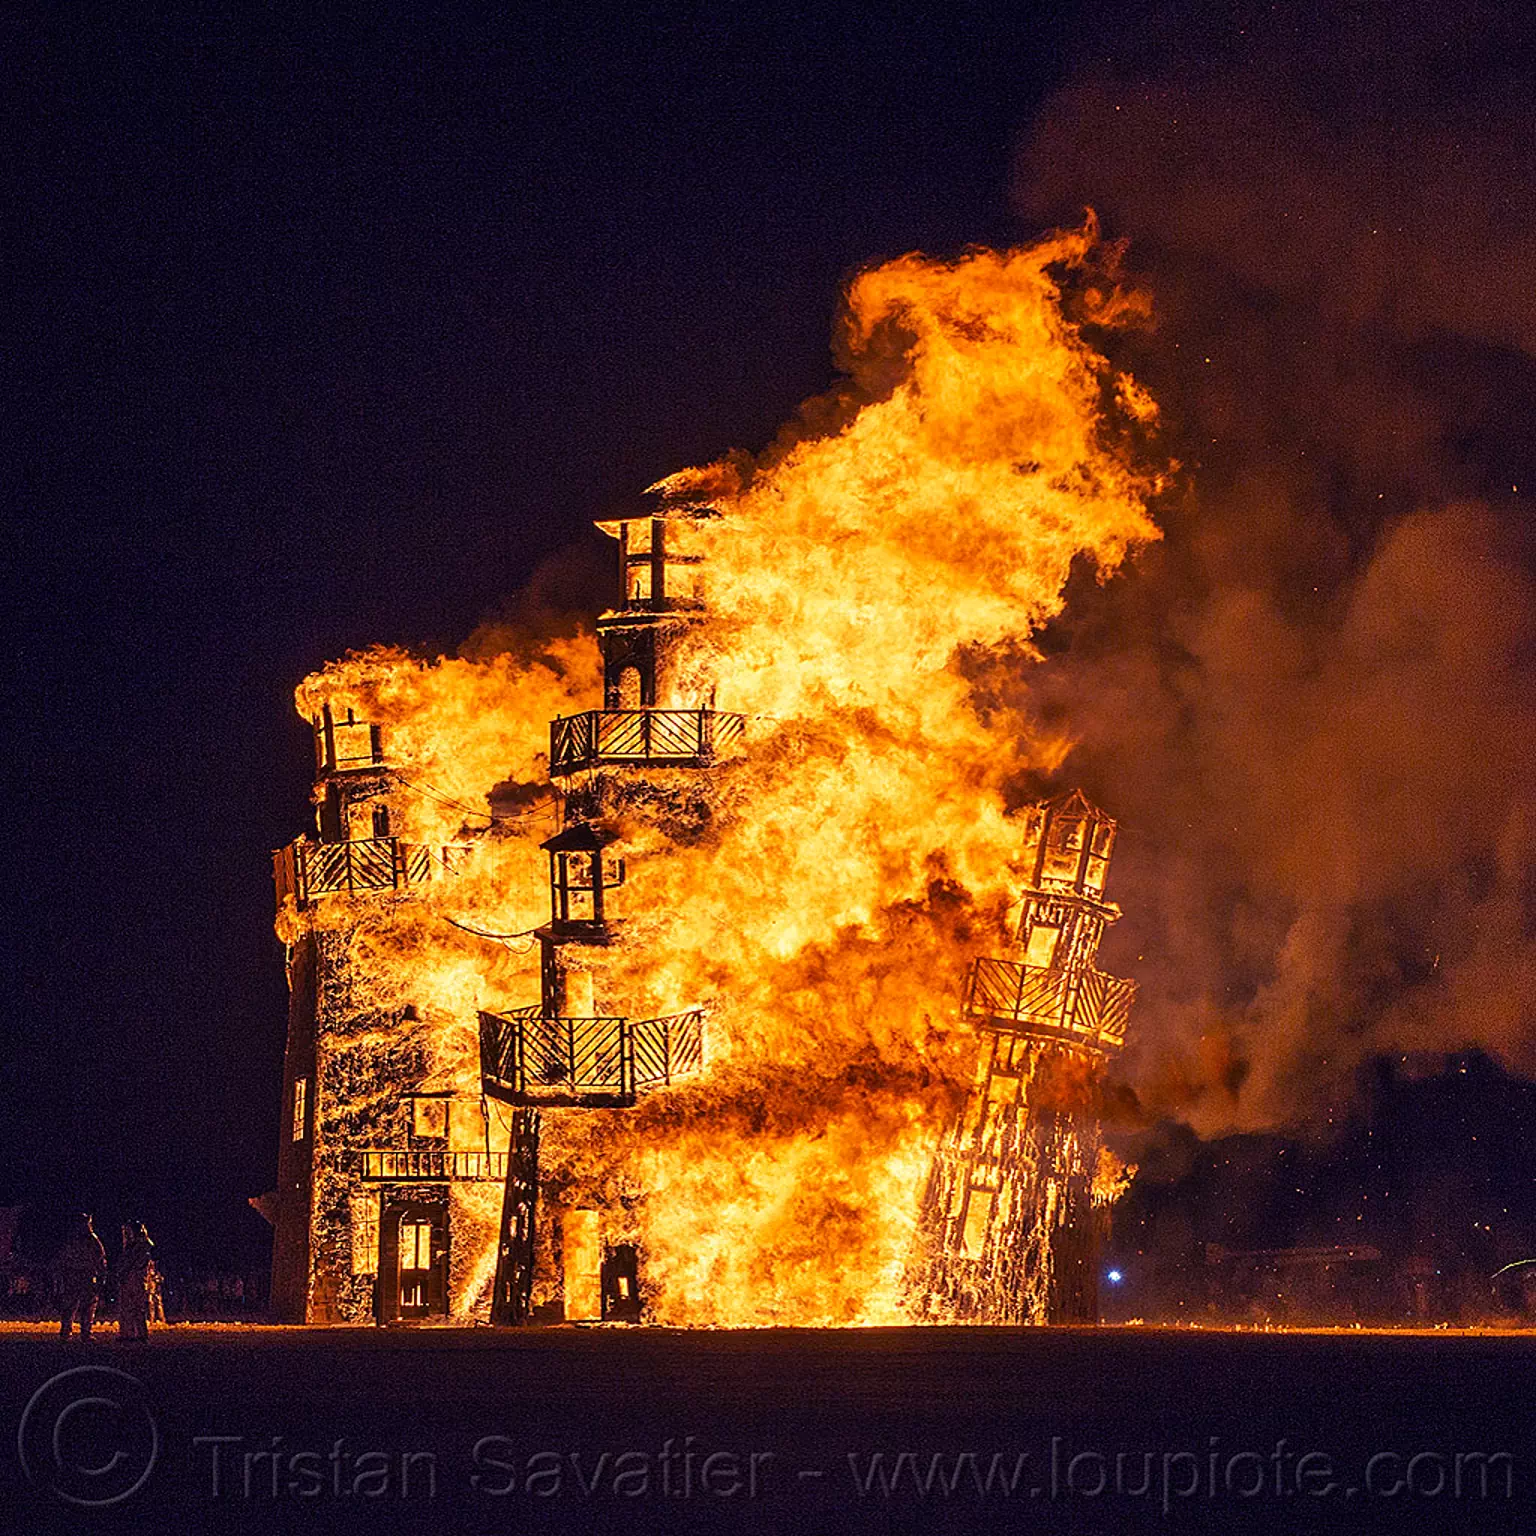 the lighthouse burning - burning man 2016, art installation, black rock lighthouse, burning man, fire, night